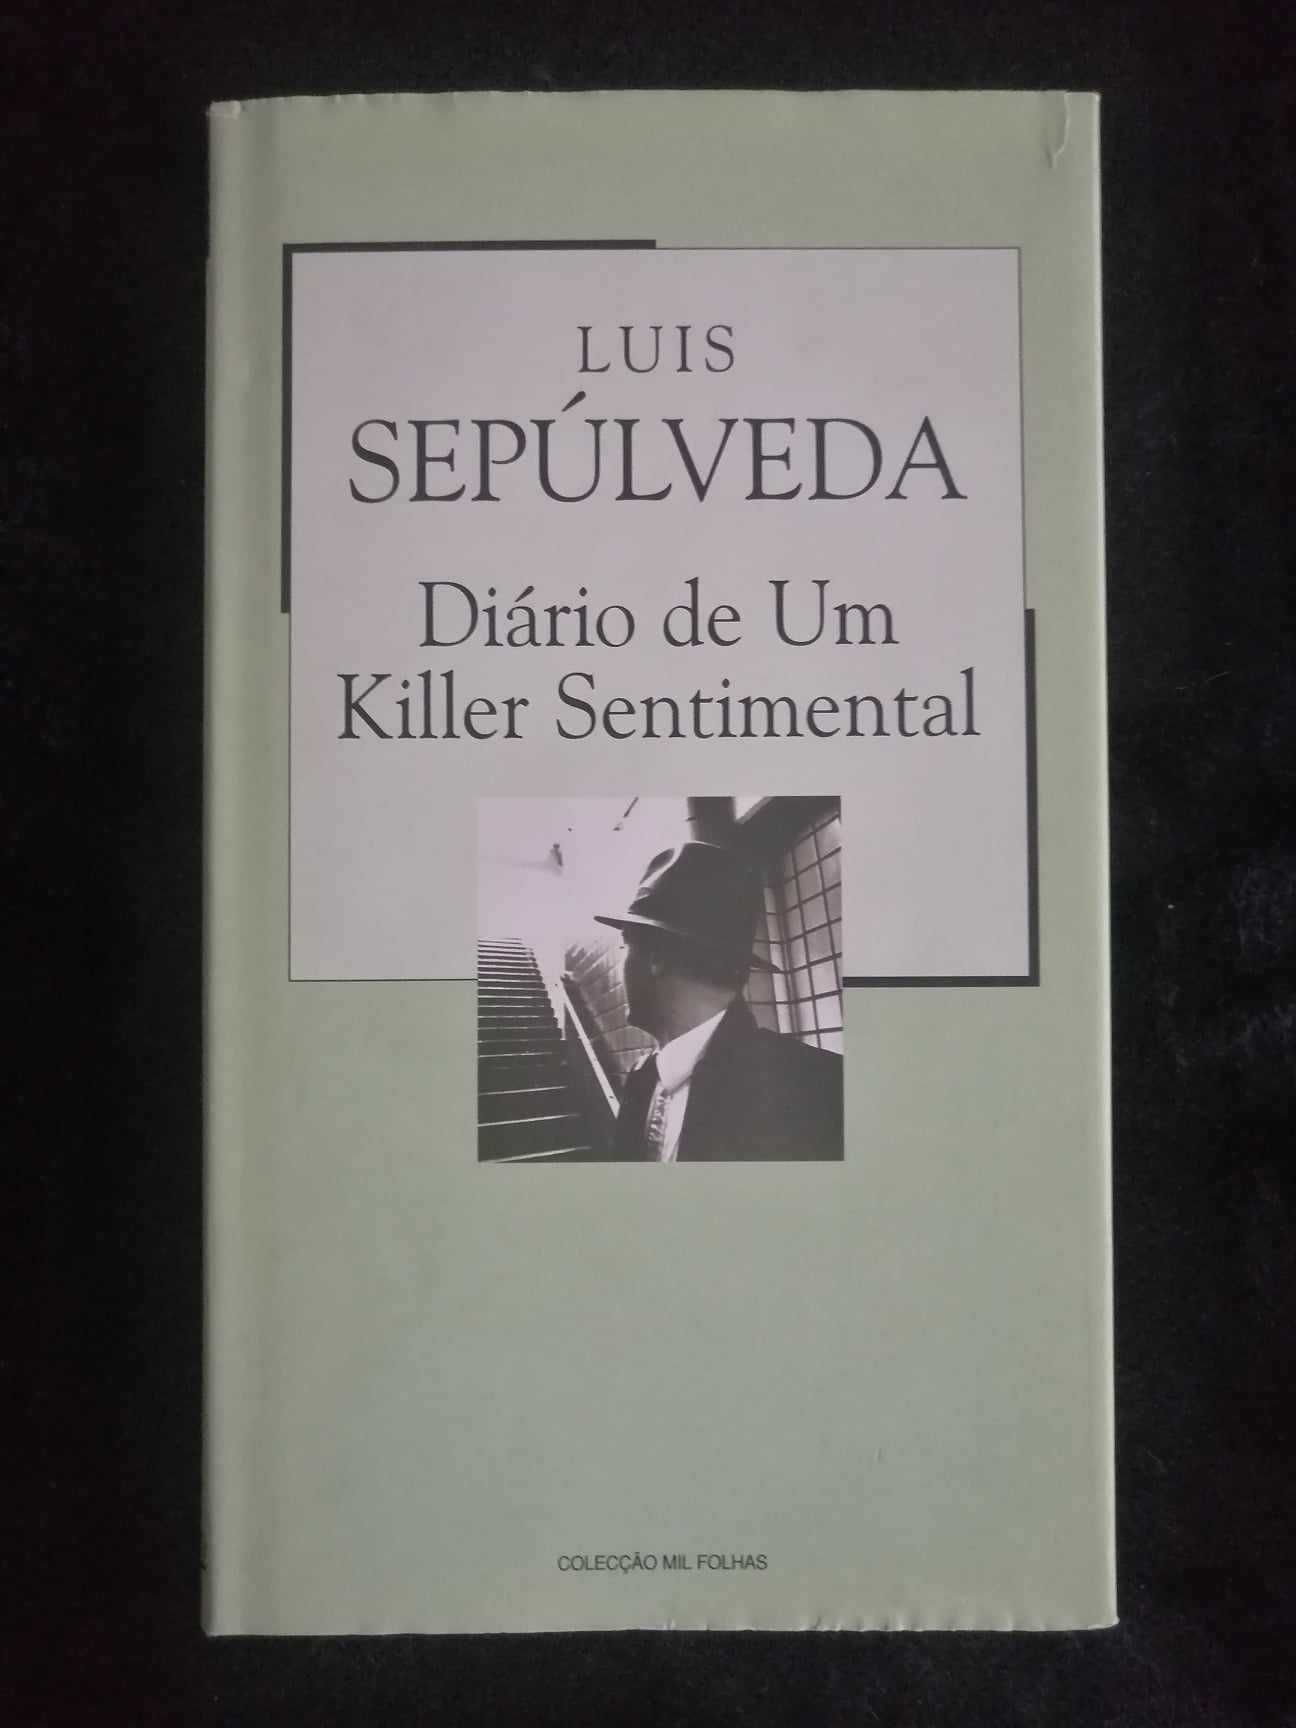 Livro "Diário de um killer sentimental" de Luis Sepúlveda - Novo